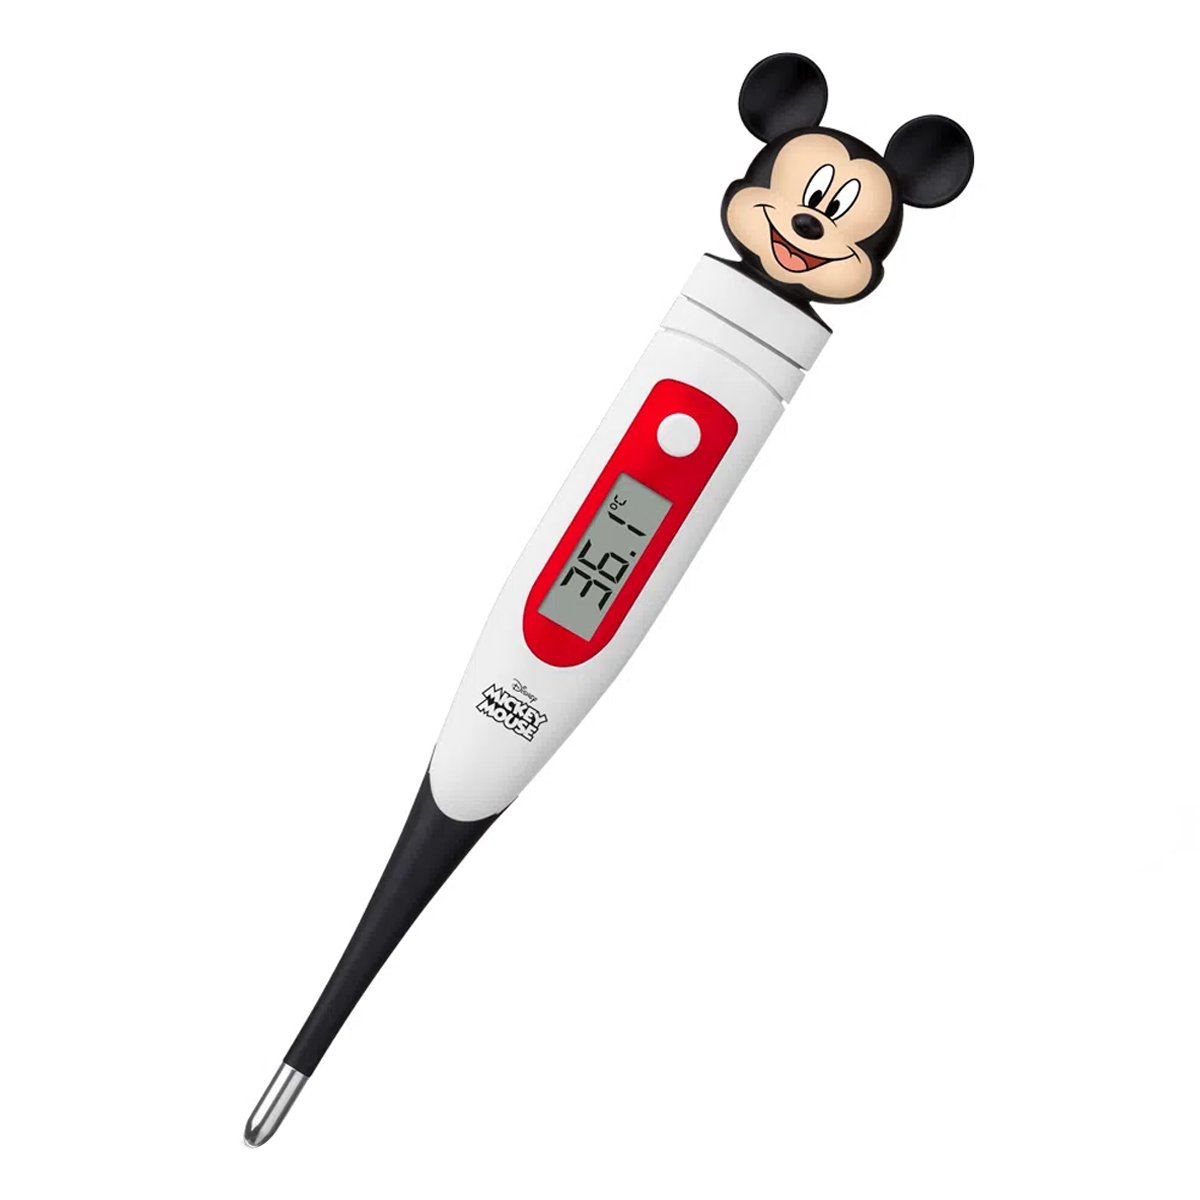 Termômetro Digital Infantil Para Medir Febre Rápido Ponta Flexível Mickey Mouse Multikids Baby Termô